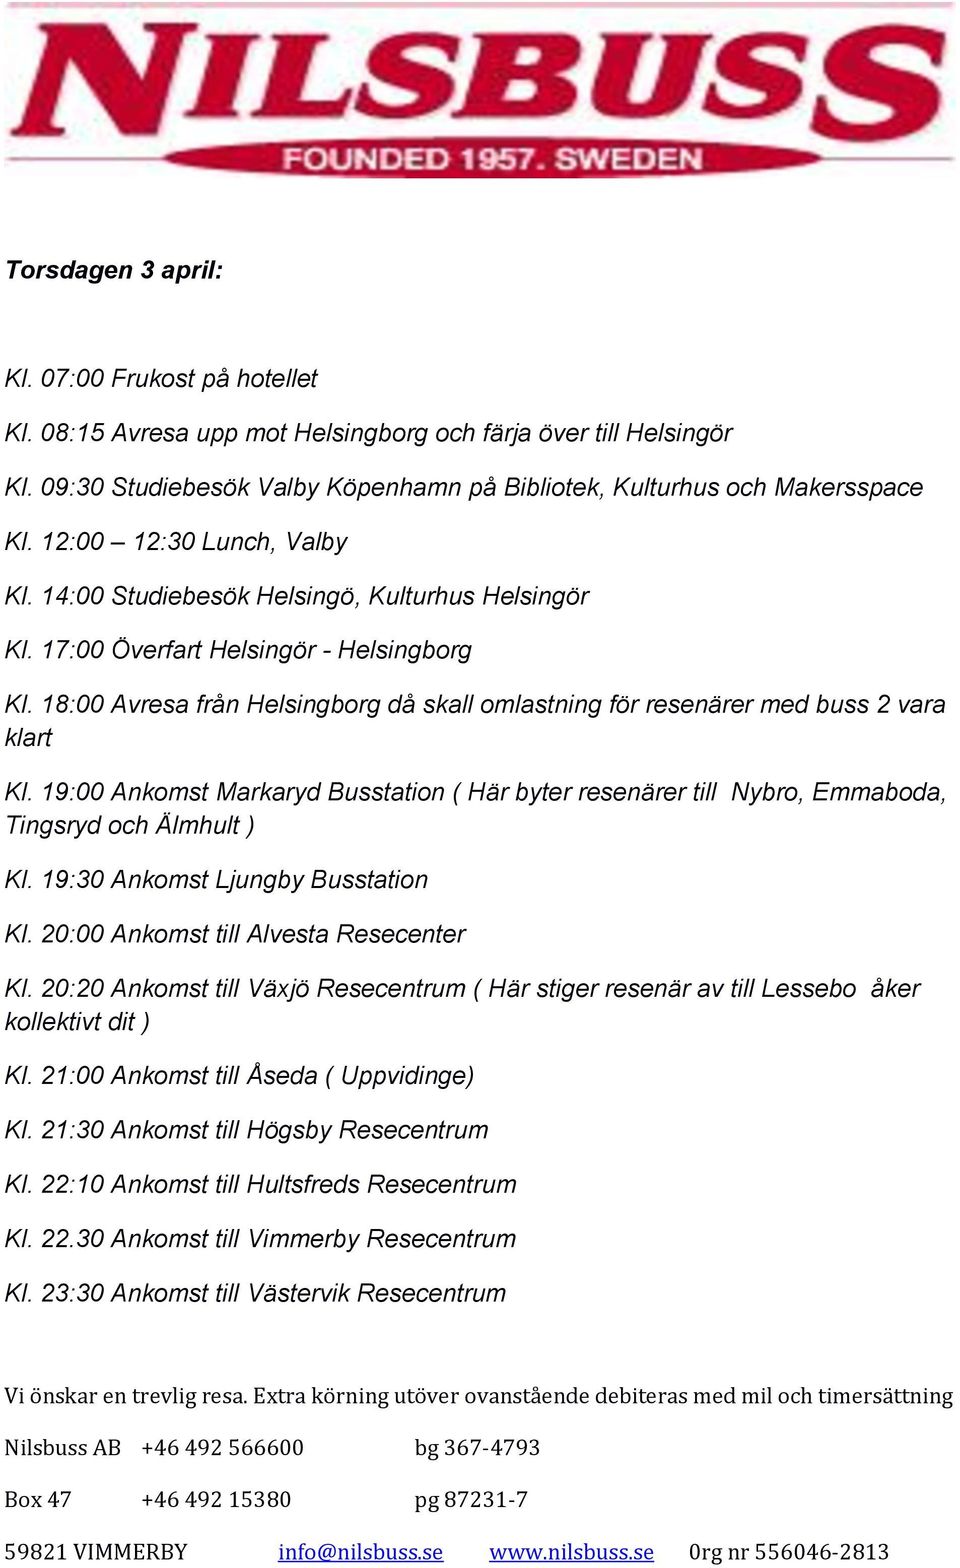 18:00 Avresa från Helsingborg då skall omlastning för resenärer med buss 2 vara klart Kl. 19:00 Ankomst Markaryd Busstation ( Här byter resenärer till Nybro, Emmaboda, Tingsryd och Älmhult ) Kl.